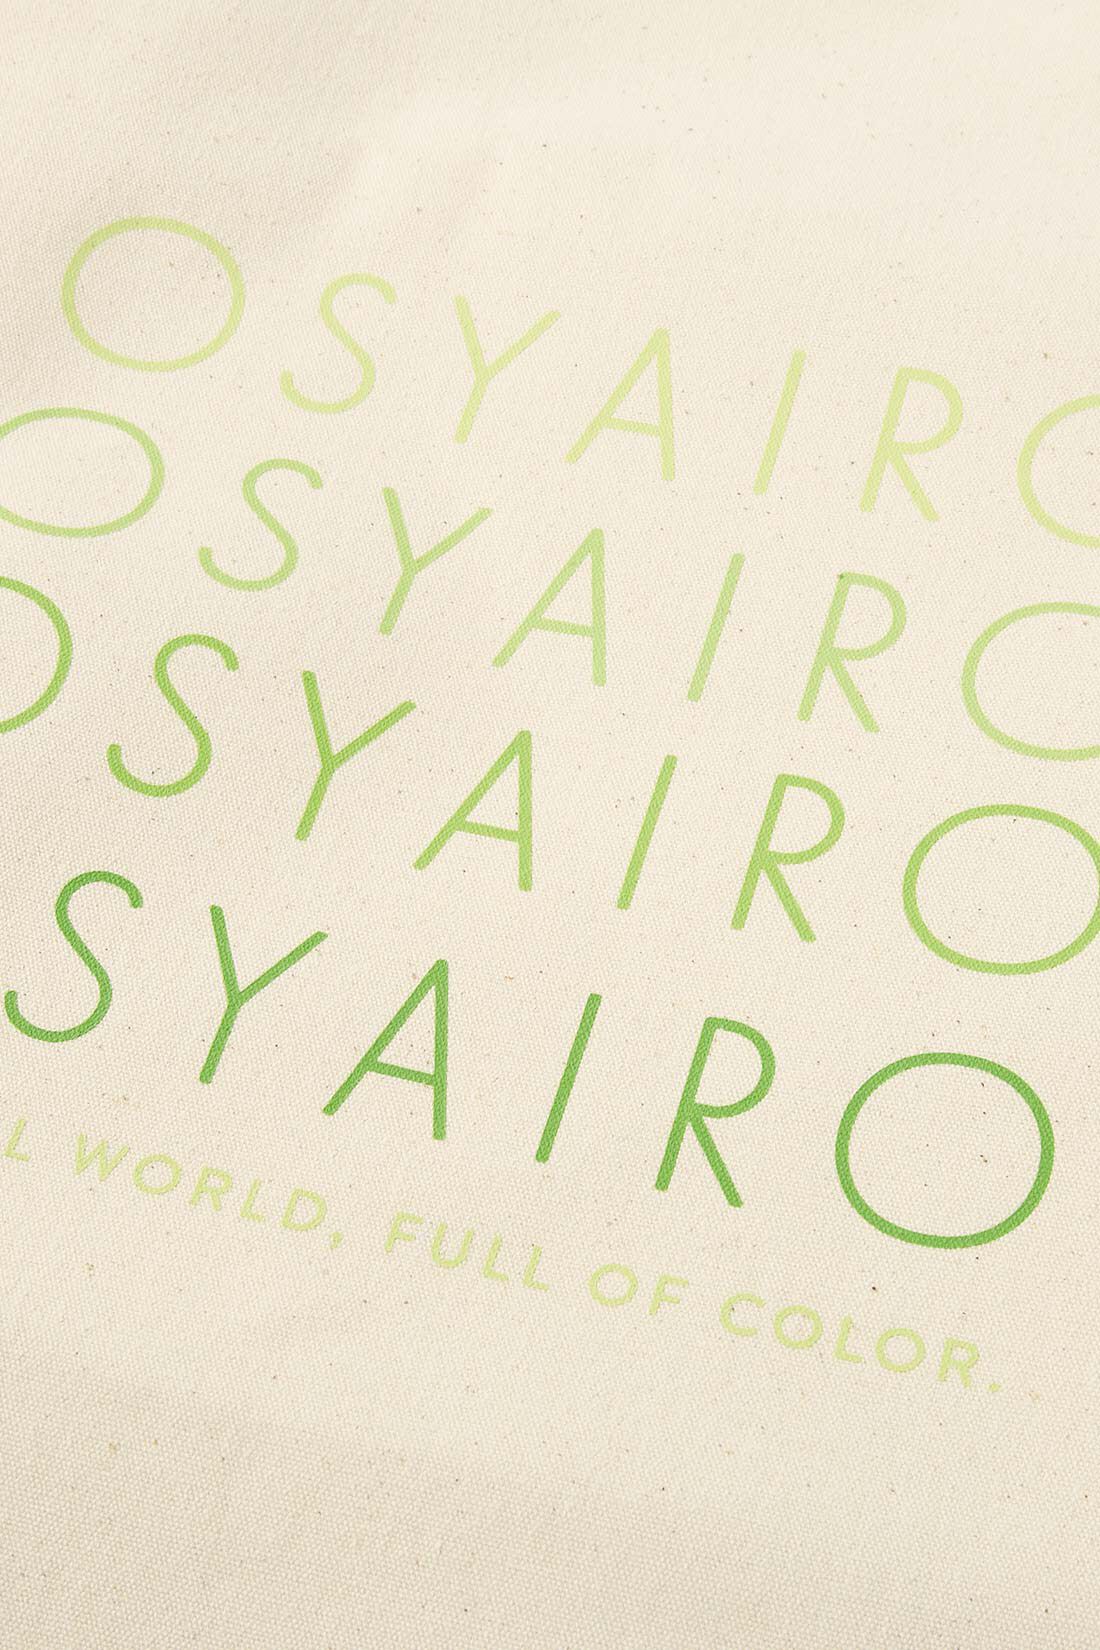 OSYAIRO|OSYAIRO　自立して便利！ うちわポケット付き ロゴトートバッグ〈グリーン〉|生成りのキャンバス地にロゴをプリント。生地裏をコーティングしているのでハリのある生地です。